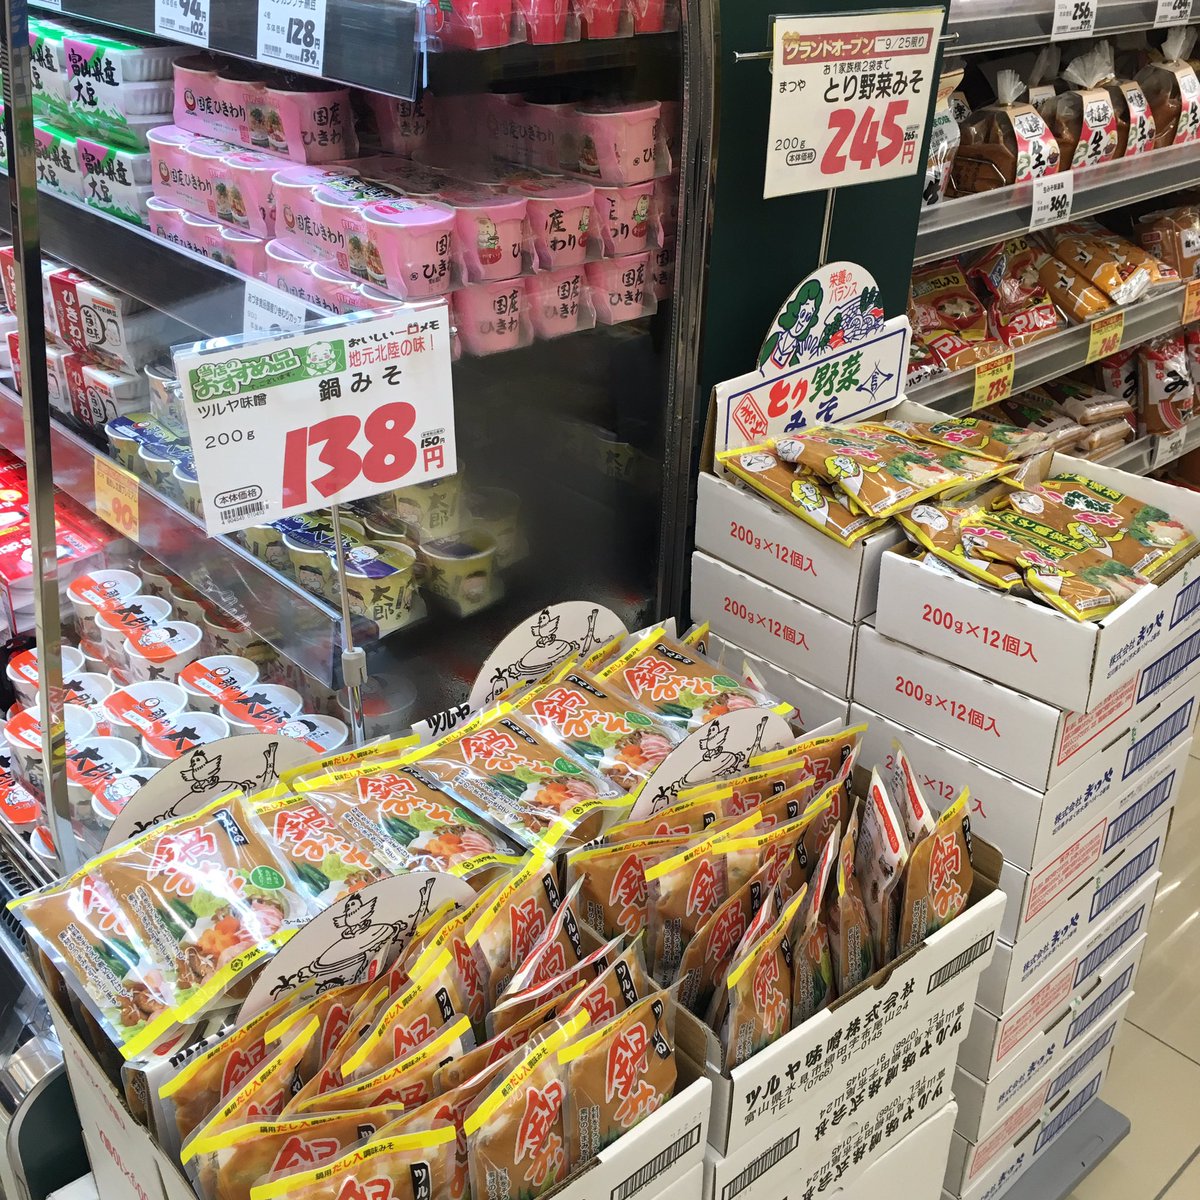 森井ユカ 地元スーパーのおいしいもの 47都道府県の旅 13県目 富山のスーパーでは 石川県まつやのあの とり野菜みそ を富山県ツルヤ味噌の 鍋みそ が猛追してます